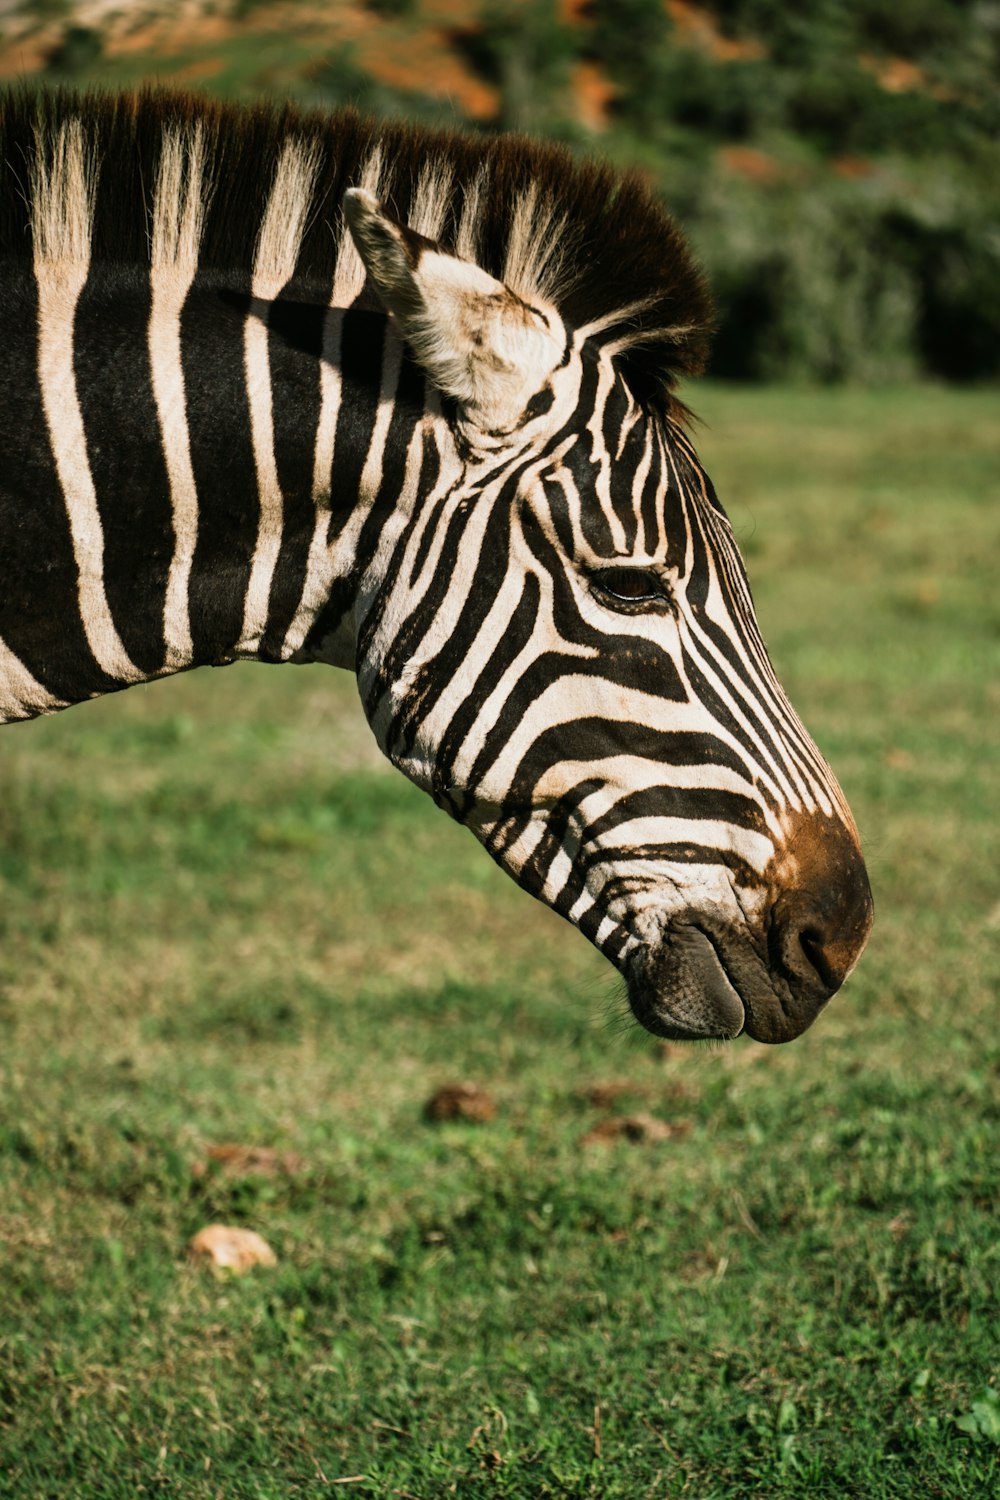 a zebra is standing in a field